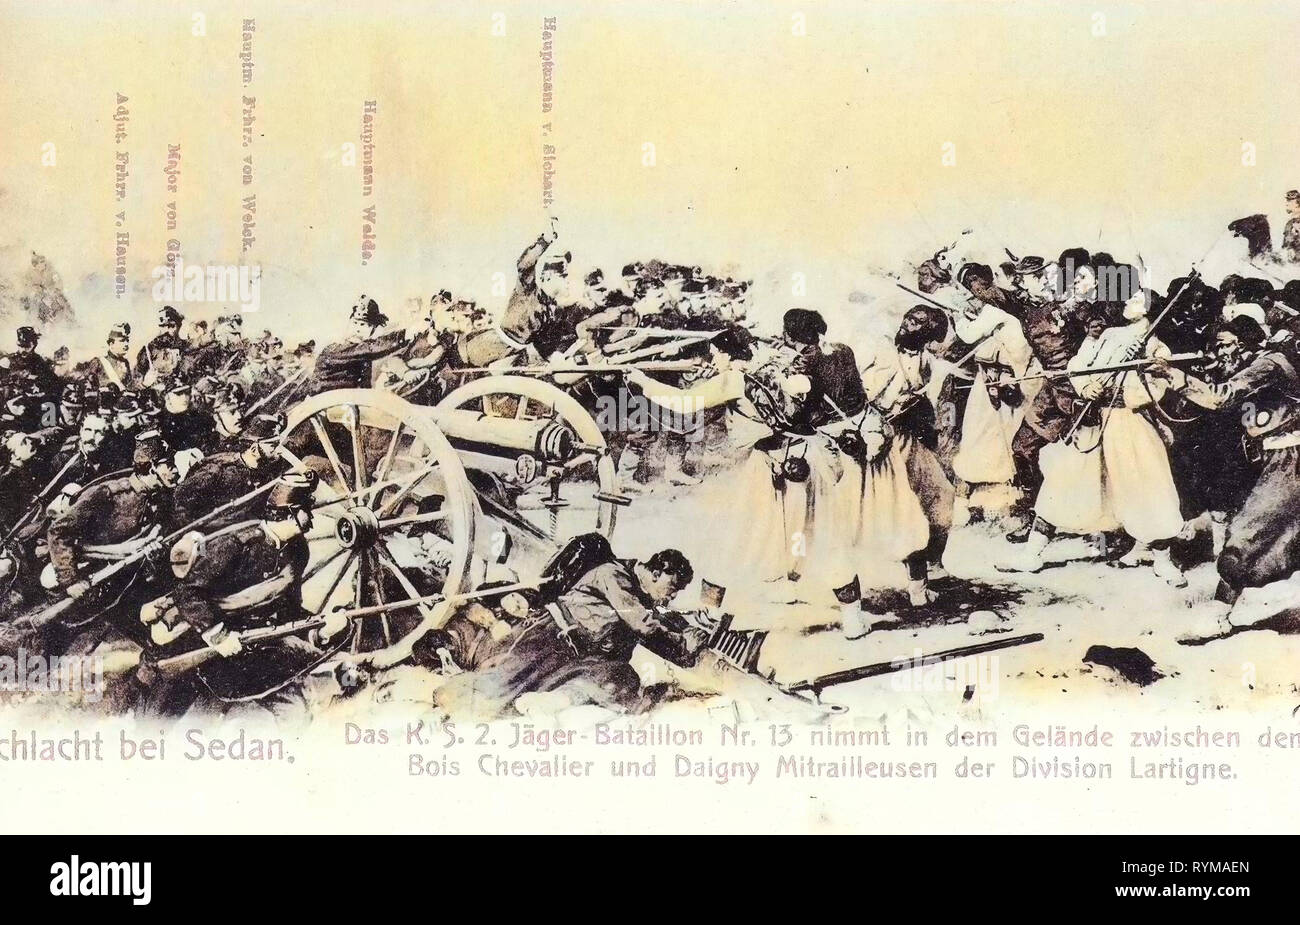 Battle of Sedan, 2. Königlich Sächsisches Jäger-Bataillon Nr. 13, 1905, France, Daigny, Sedan, Schlacht bei Sedan, Das 2. Königlich Sächsische Jäger, Bataillon im Gelände Stock Photo